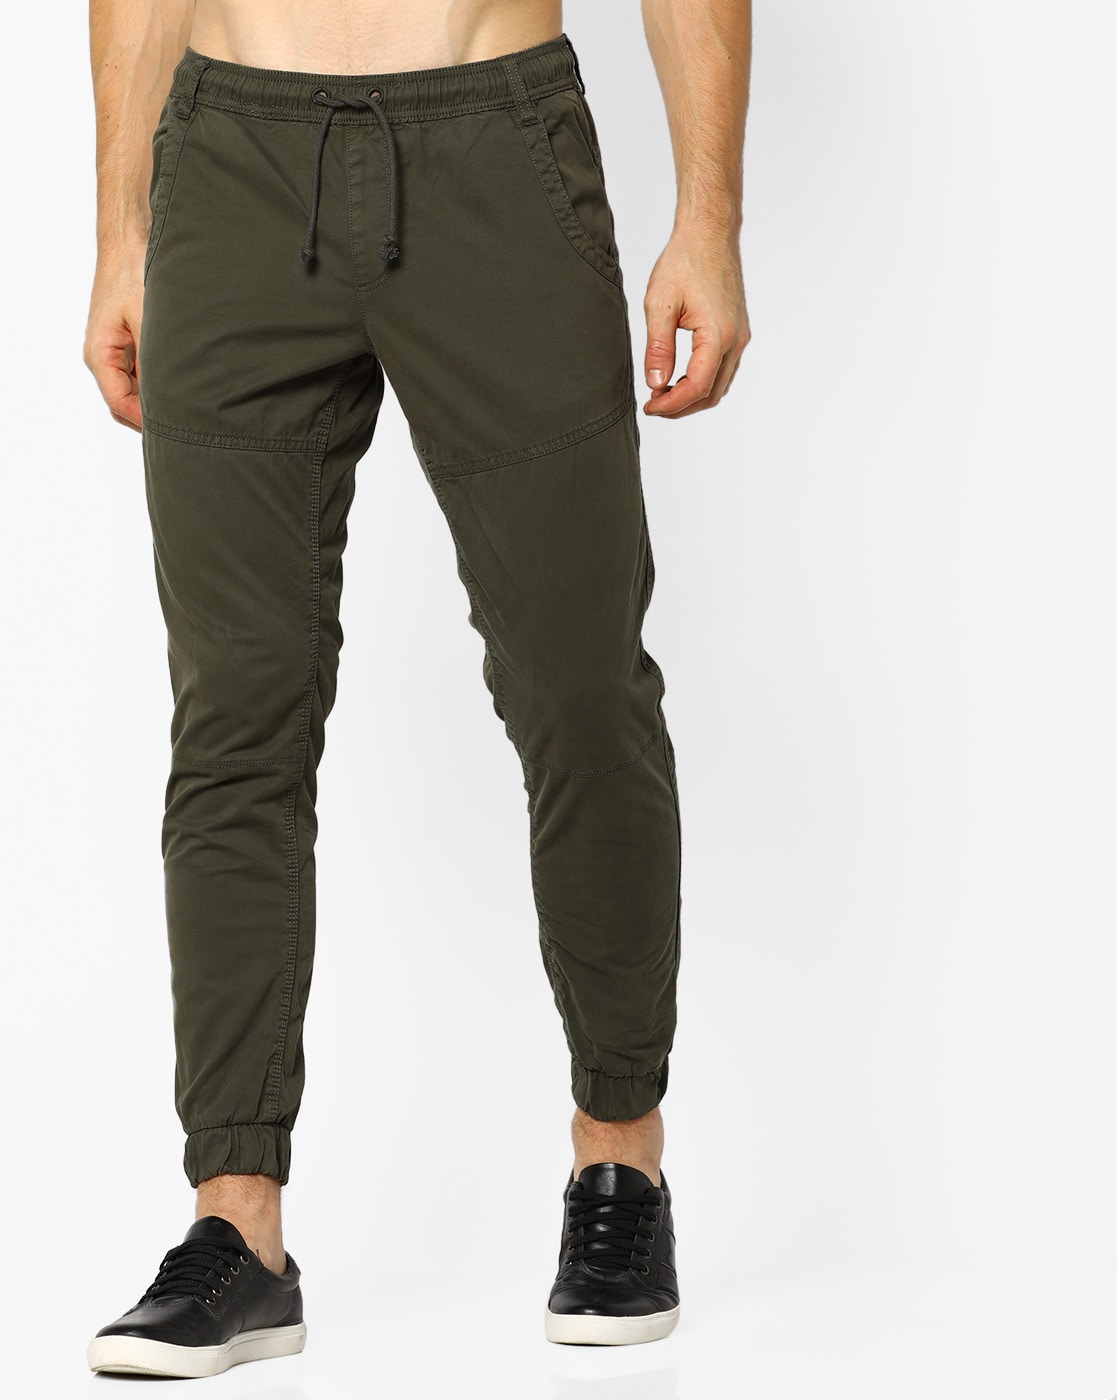 Order jogging pants for men online – JLR Design